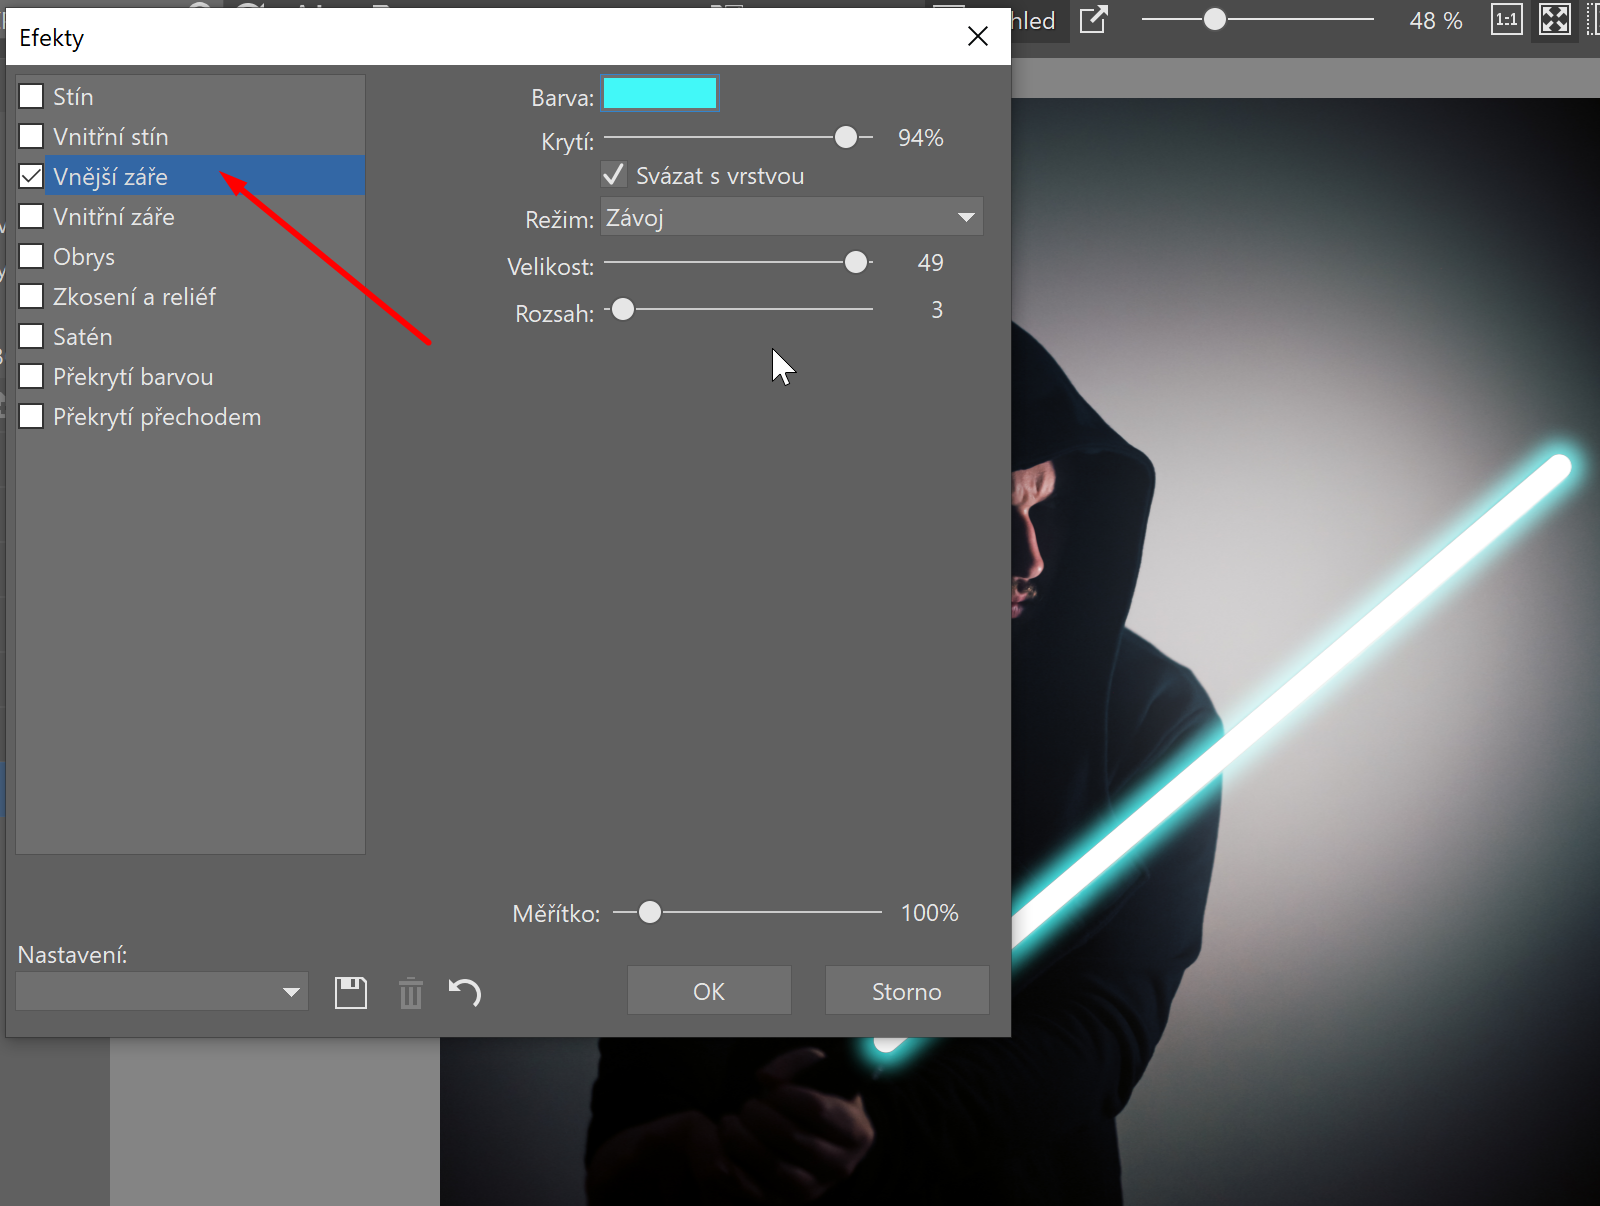 Star Wars speciál: přidejte si do fotky světelný meč - přidávání efektu